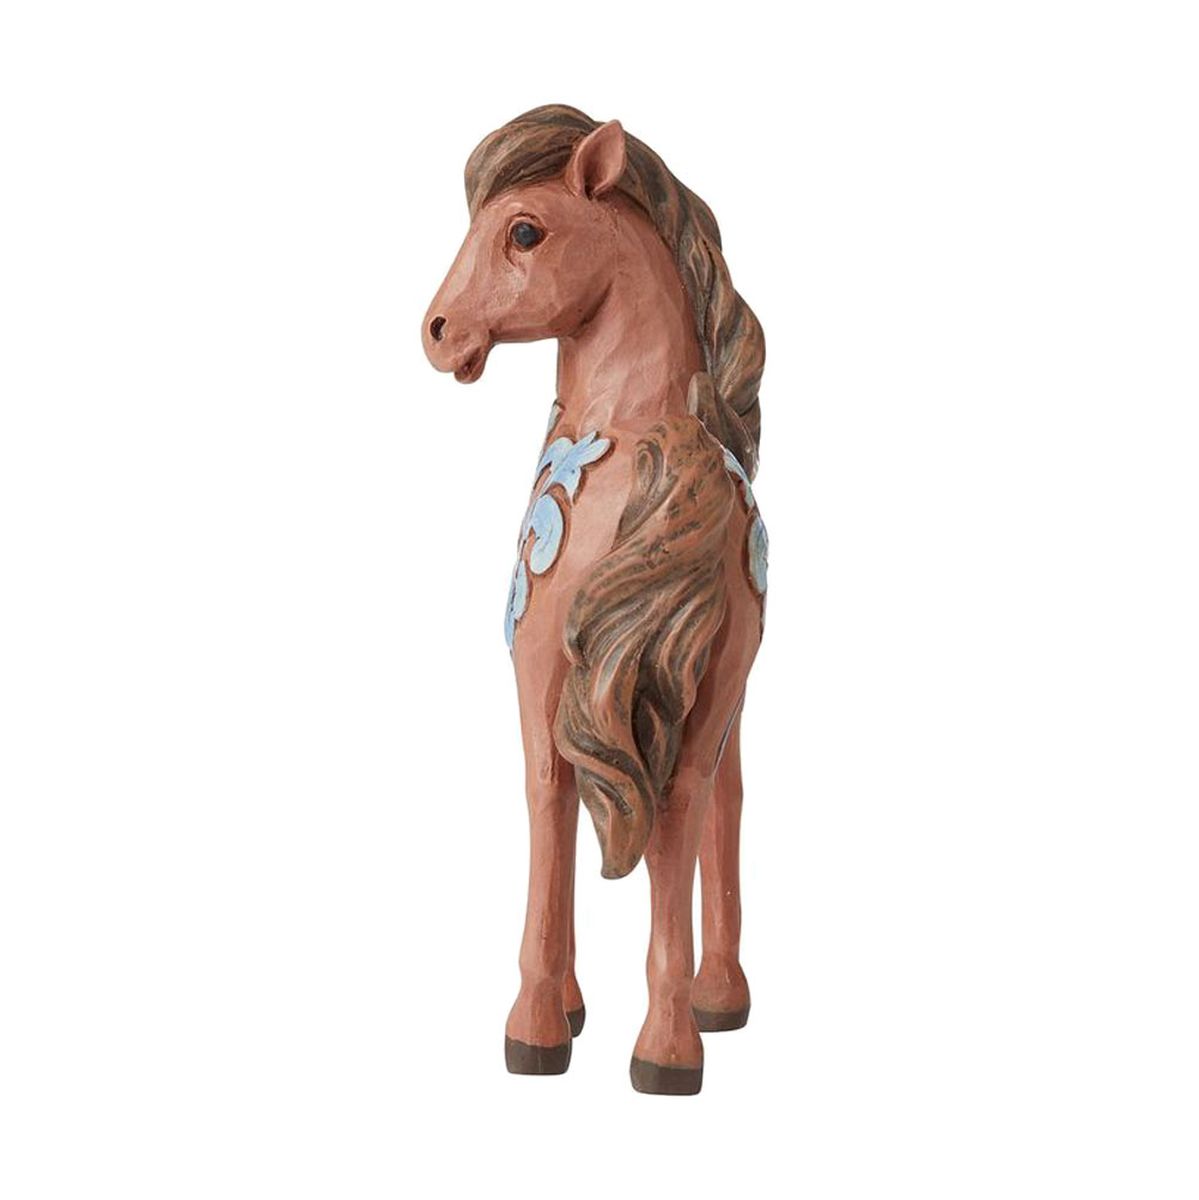 Mini pony statuette by Jim Shore